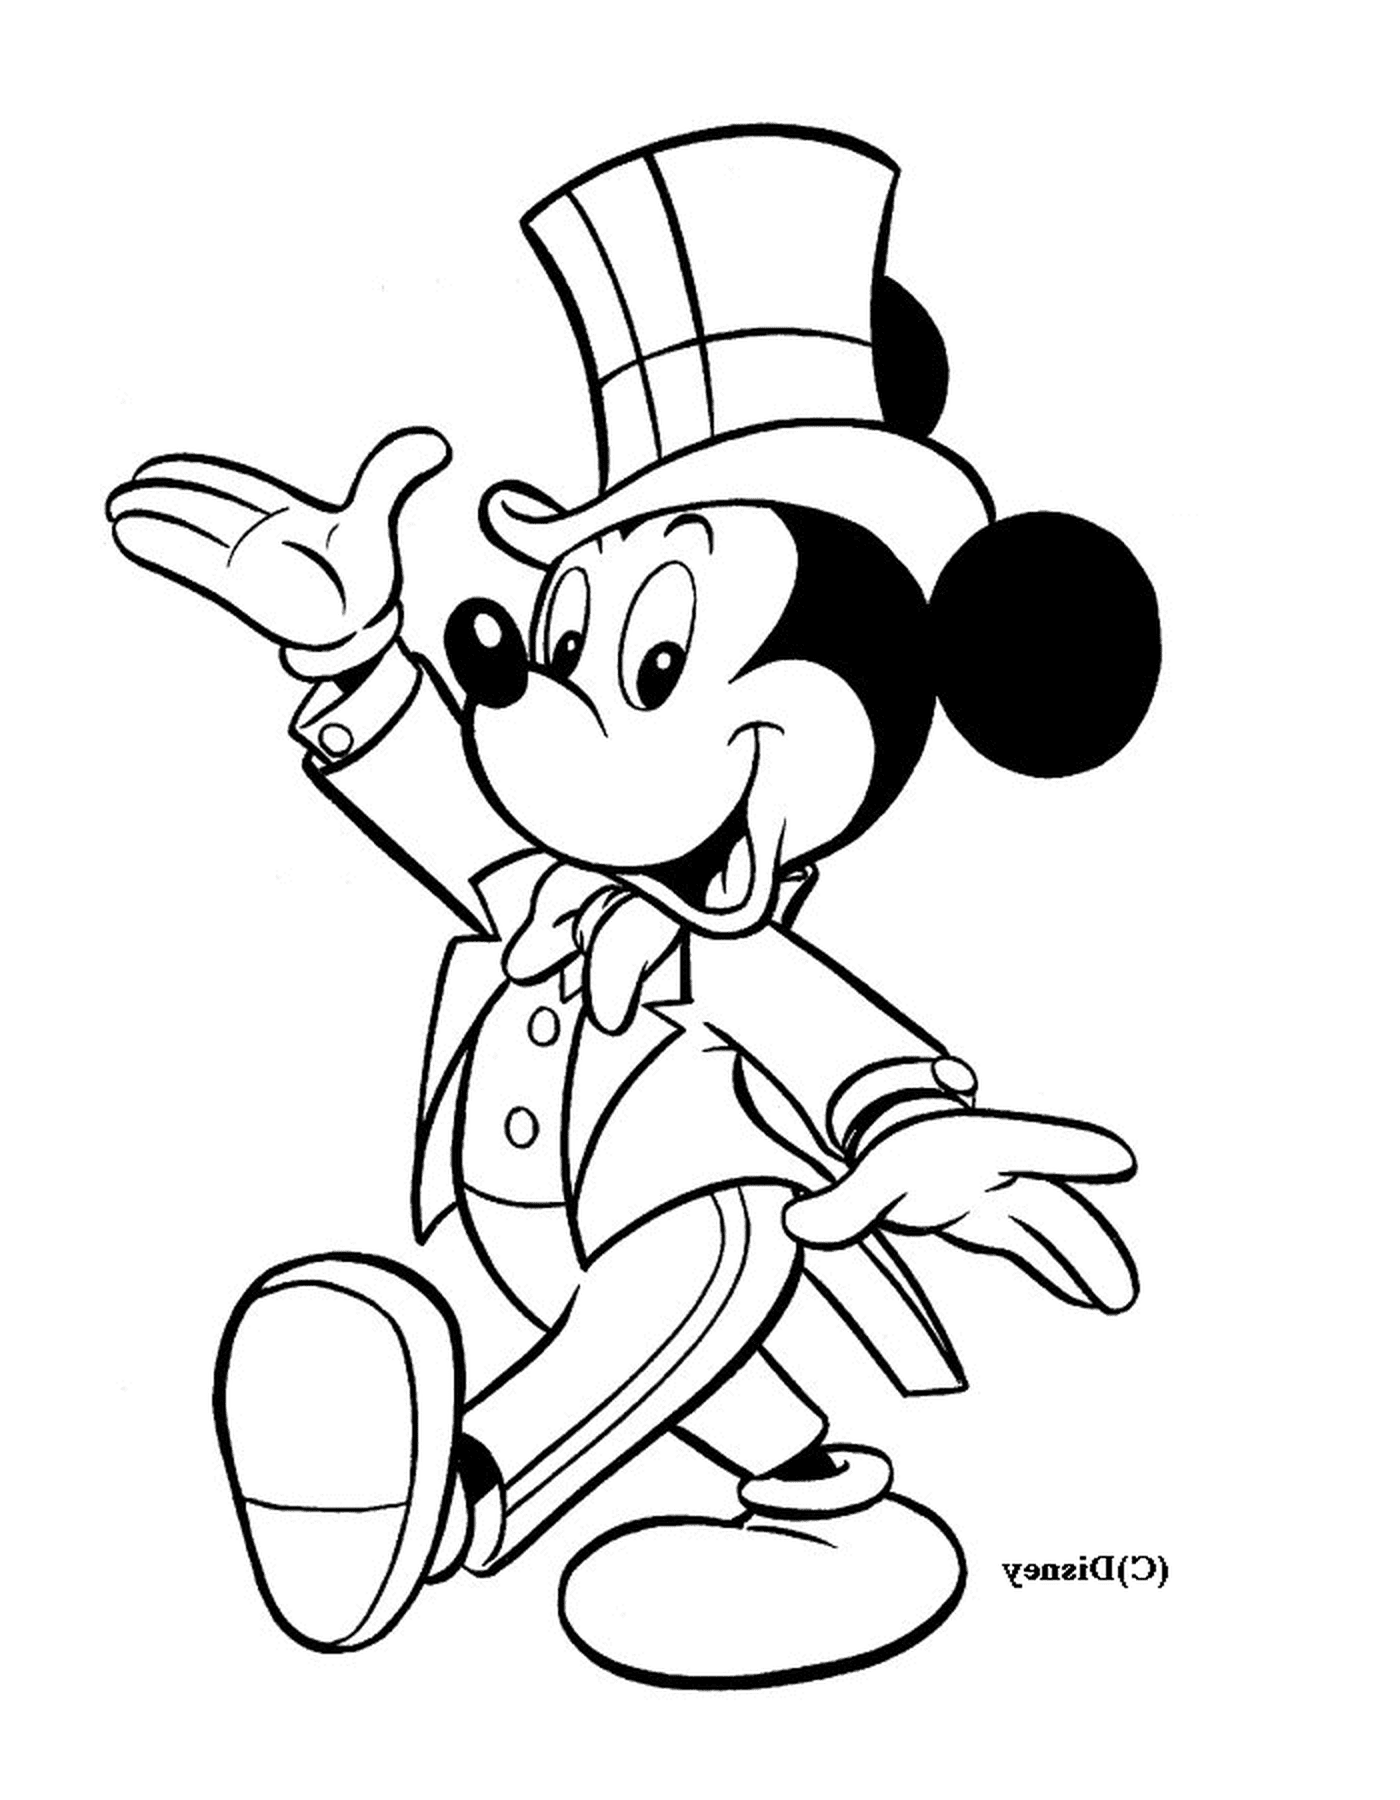  Mickey in tuxedo: wearing a top 